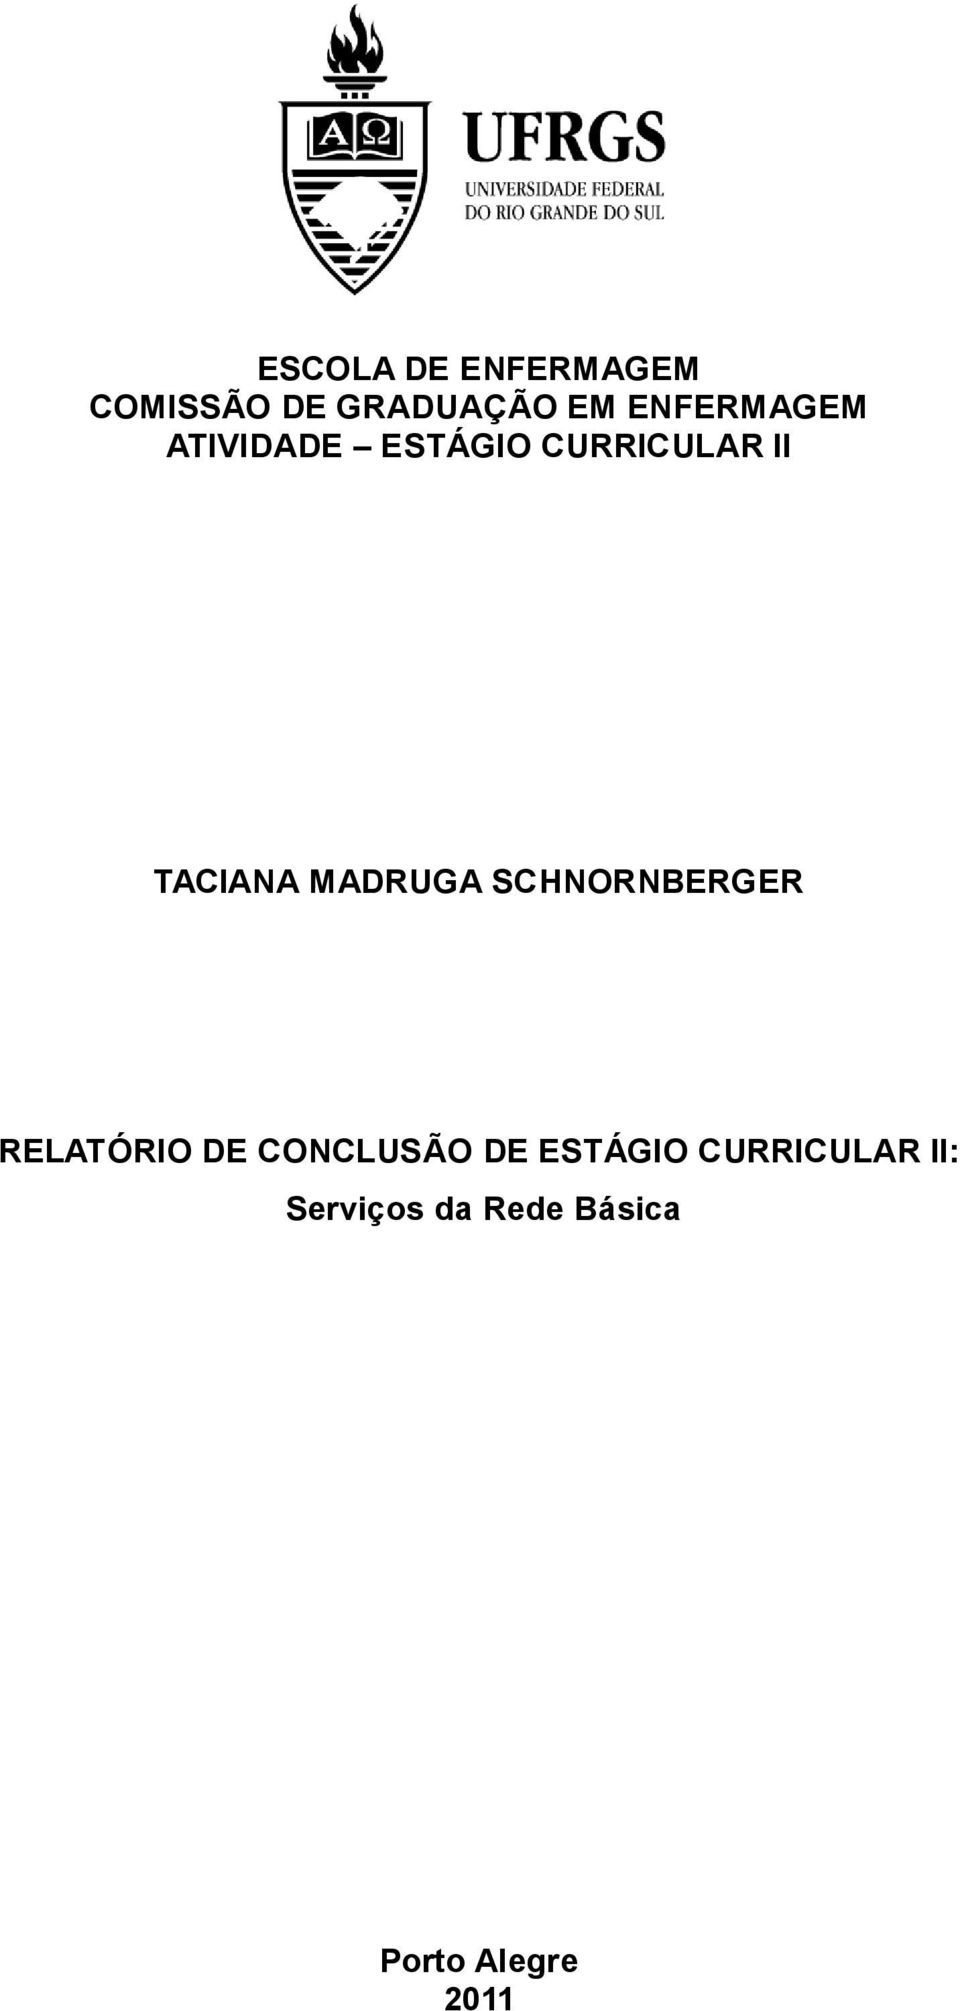 MADRUGA SCHNORNBERGER RELATÓRIO DE CONCLUSÃO DE